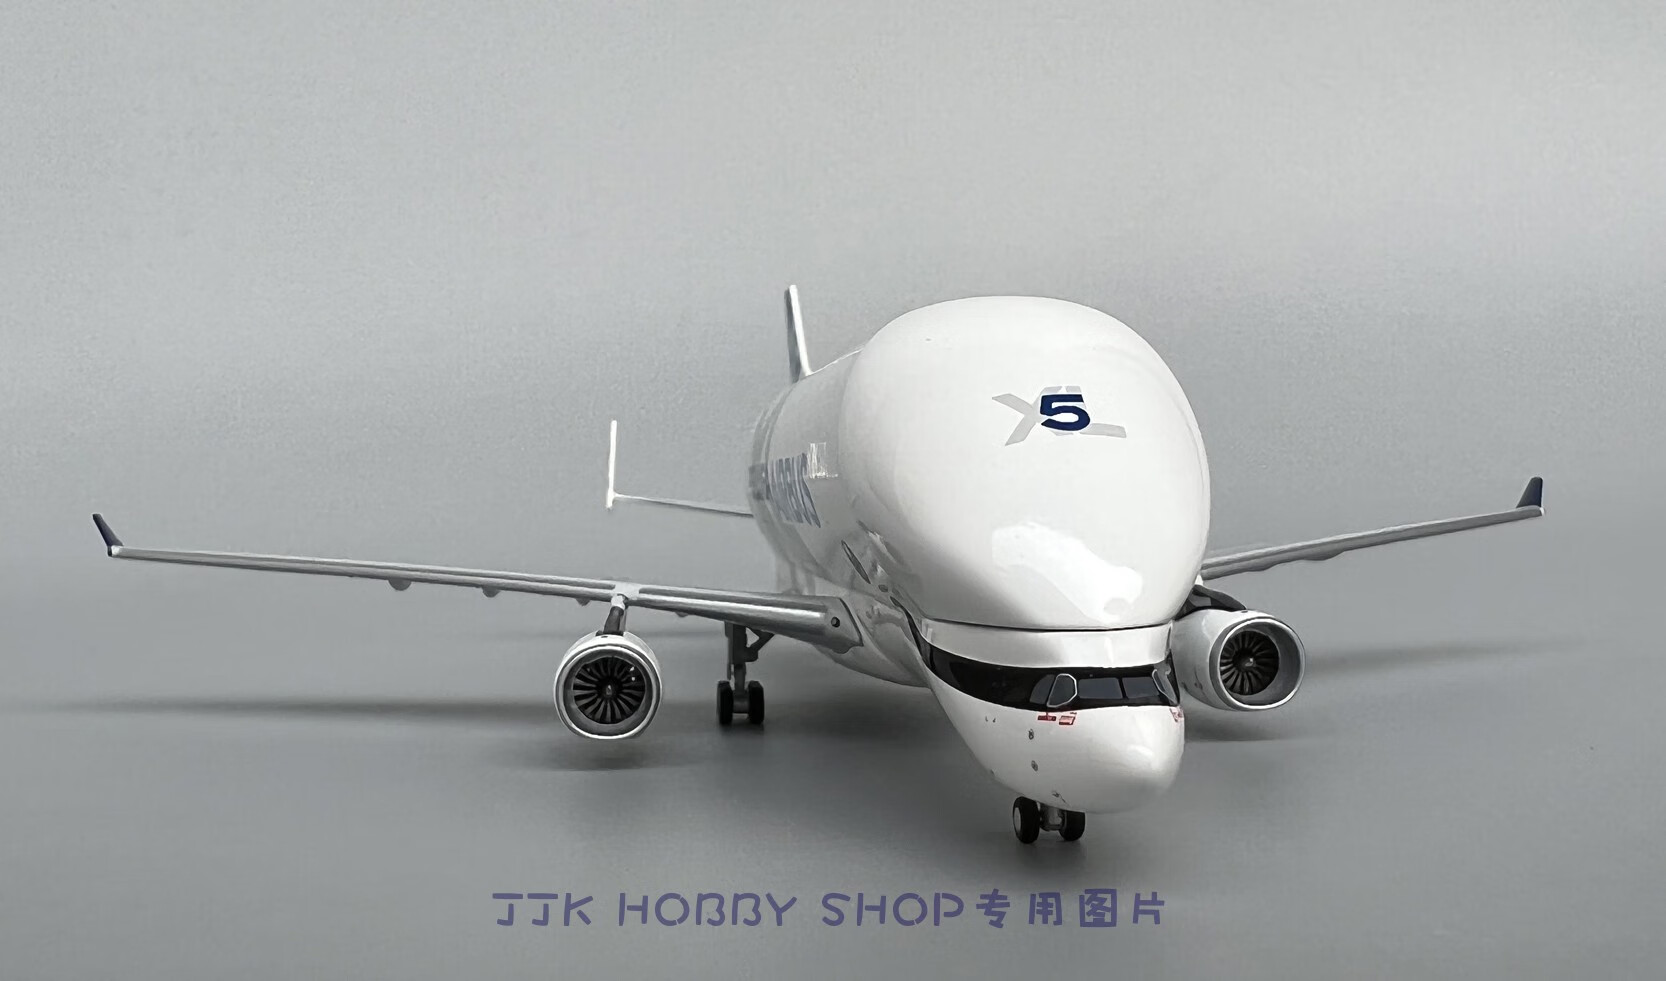 天智星超级大白鲸飞机模型 60007 1/400 5号机 空客A330-743L F-GXLN 模型尺寸很小